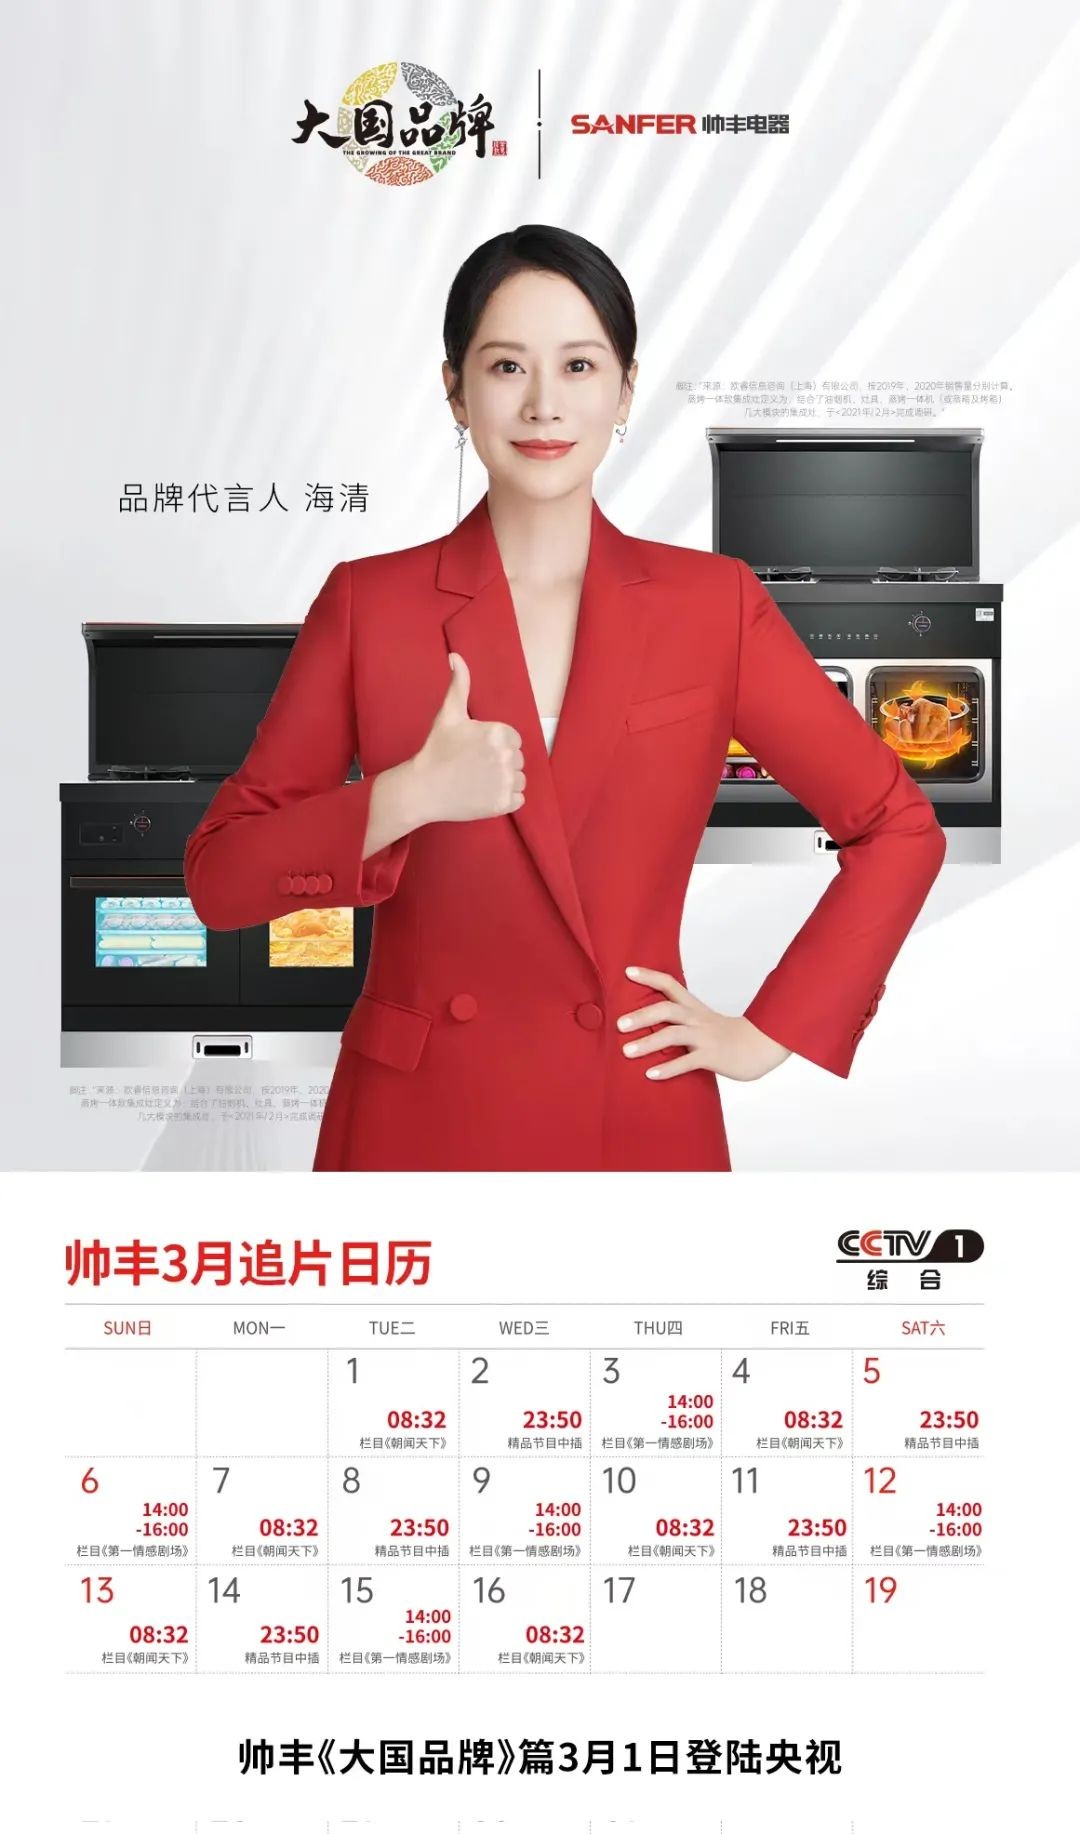 大国品牌帅丰集成灶高频刷屏CCTV1，为健康厨房美好生活提供“中国方案”